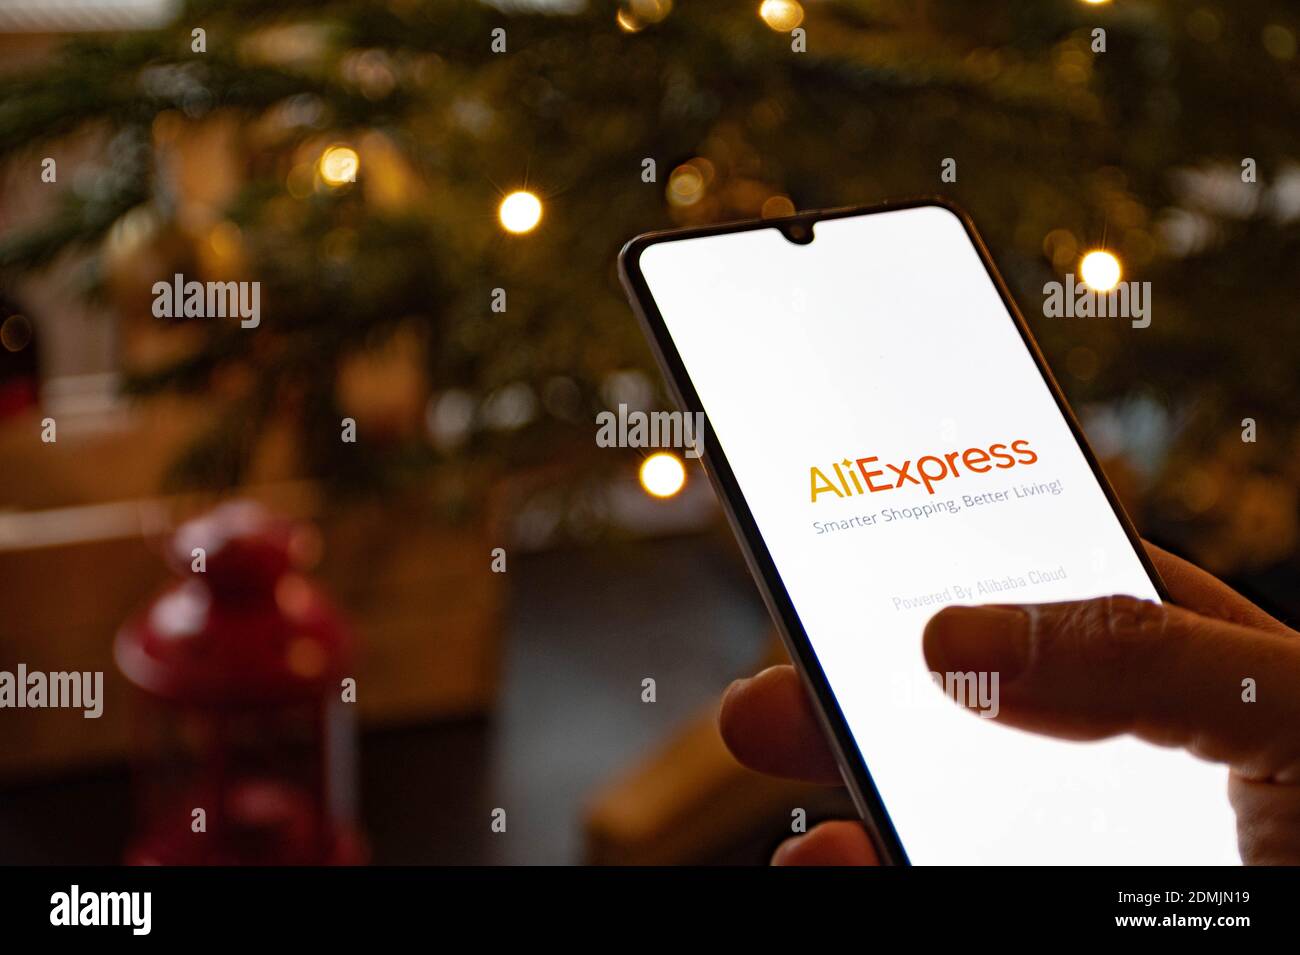 Application Alibaba sur le smartphone avec fond de Noël, achats en ligne, service de vente en ligne basé en Chine appartenant au Groupe Alibaba Banque D'Images